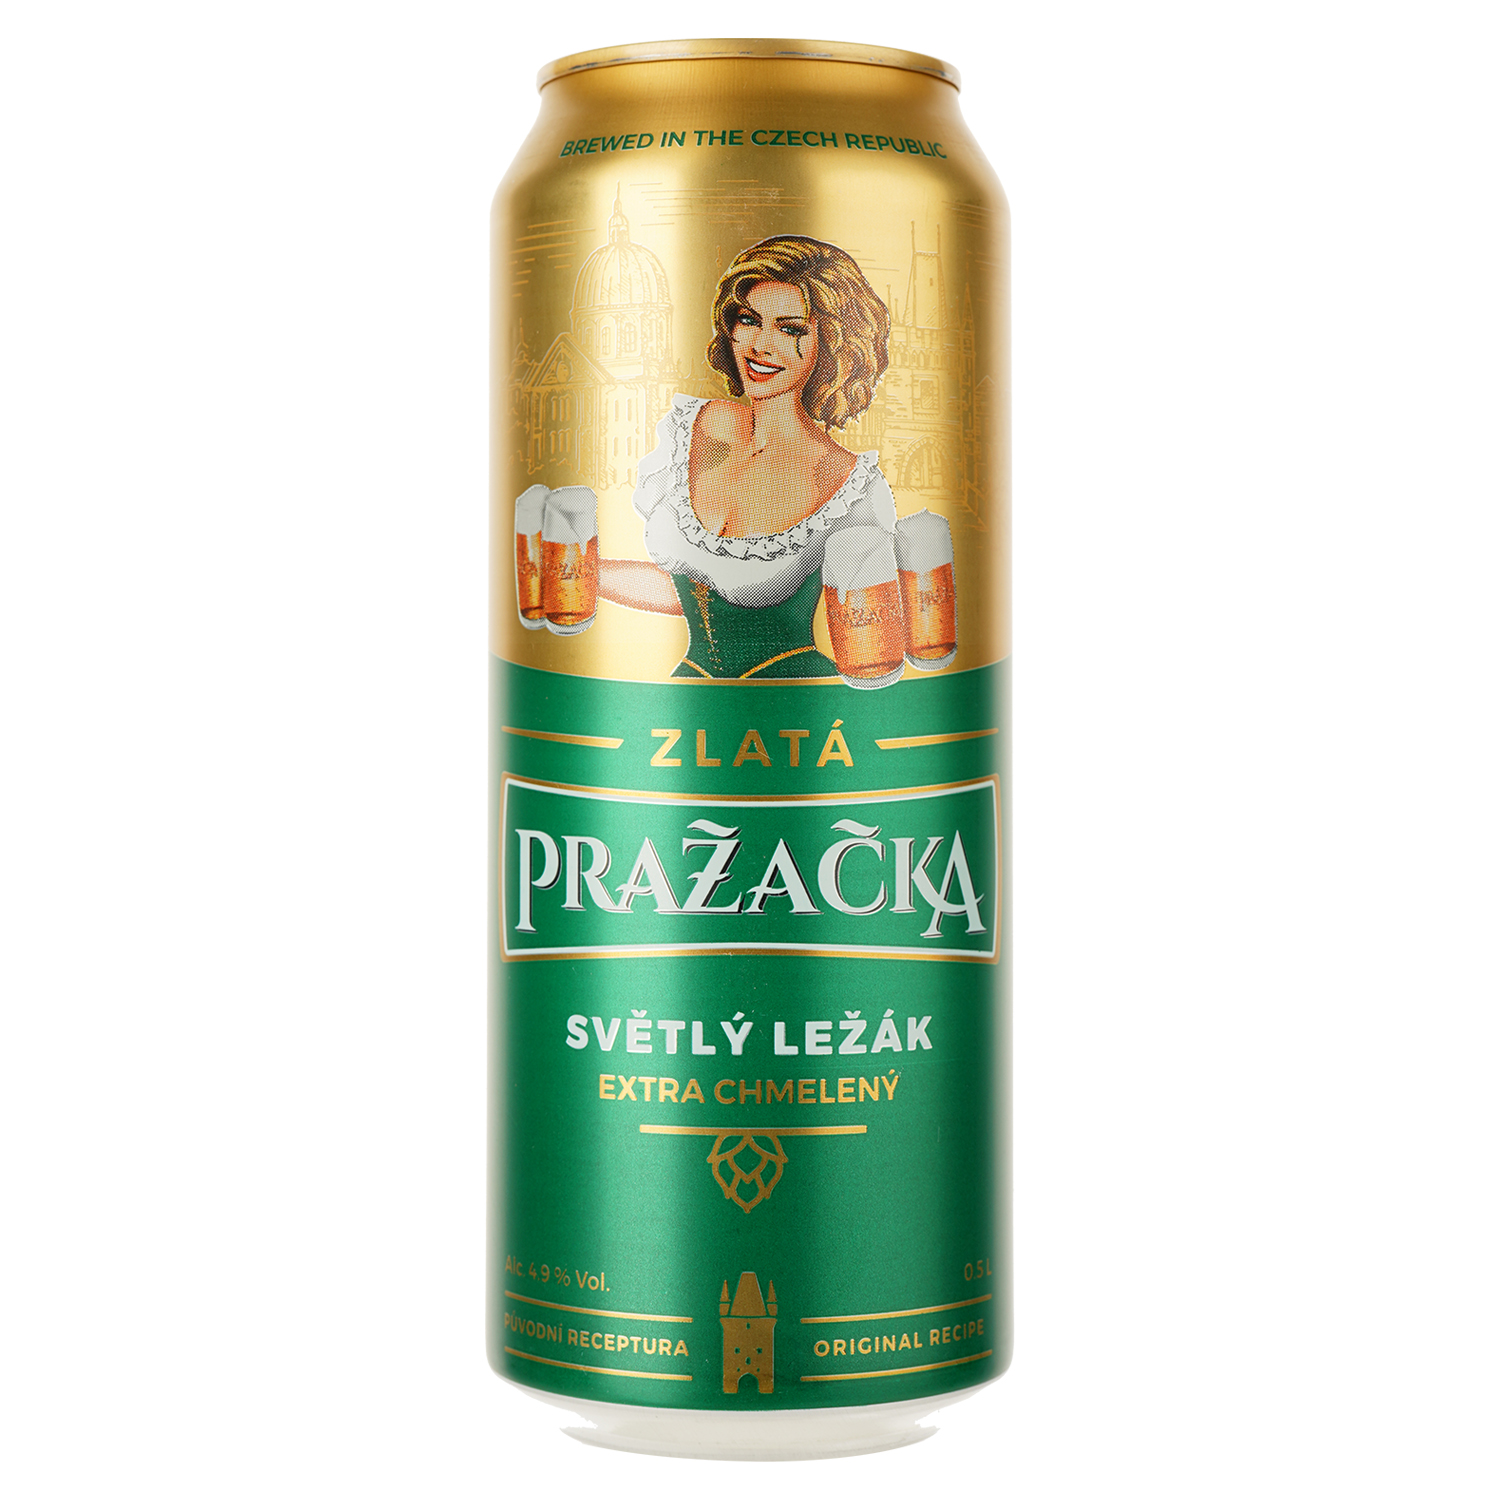 Пиво Prazacka Zlata светлое 4.9% 0.5 л ж/б - фото 1